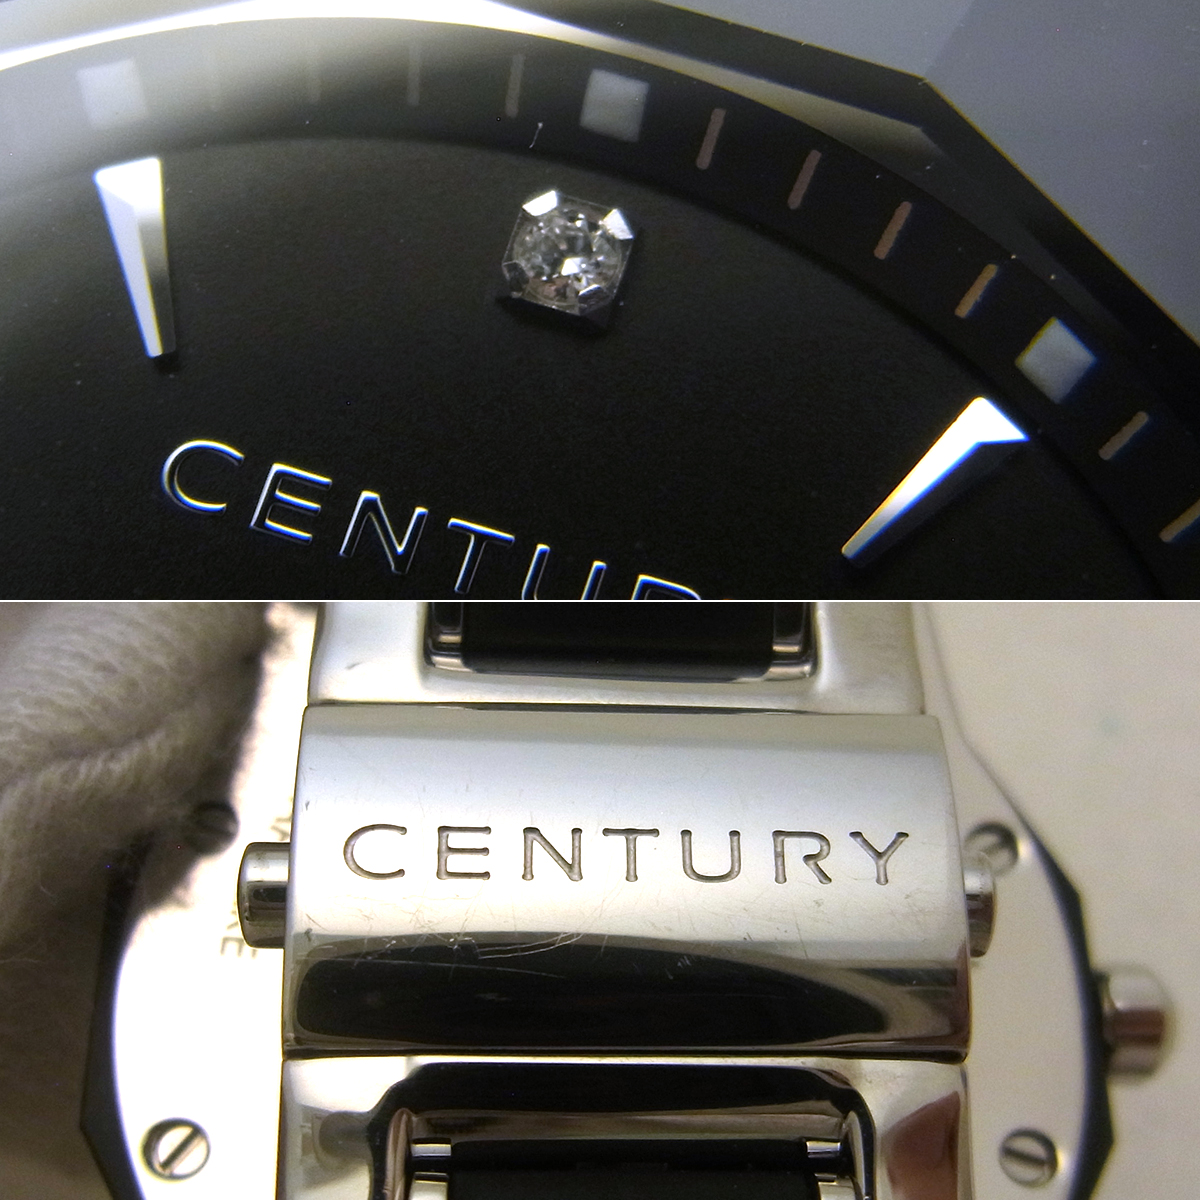 センチュリー(CENTURY) プライム タイム エゴス 606.7.X.501.12.SR 1Pダイヤ 腕時計 ブラック文字盤